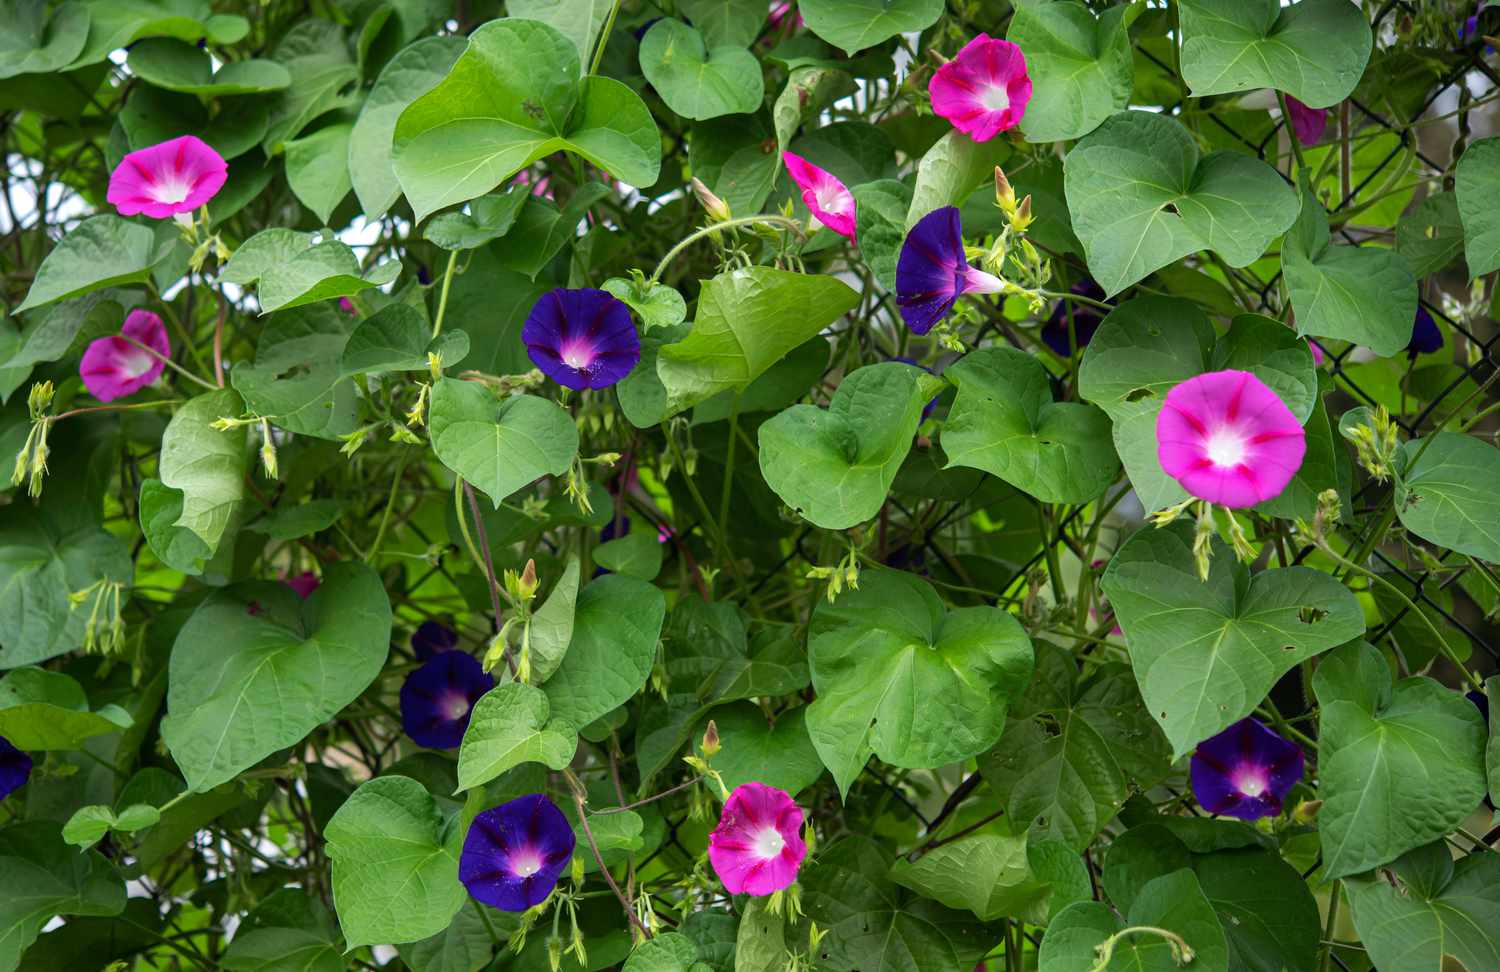 Prunkwinde mit violetten und rosa Blüten in Ranken